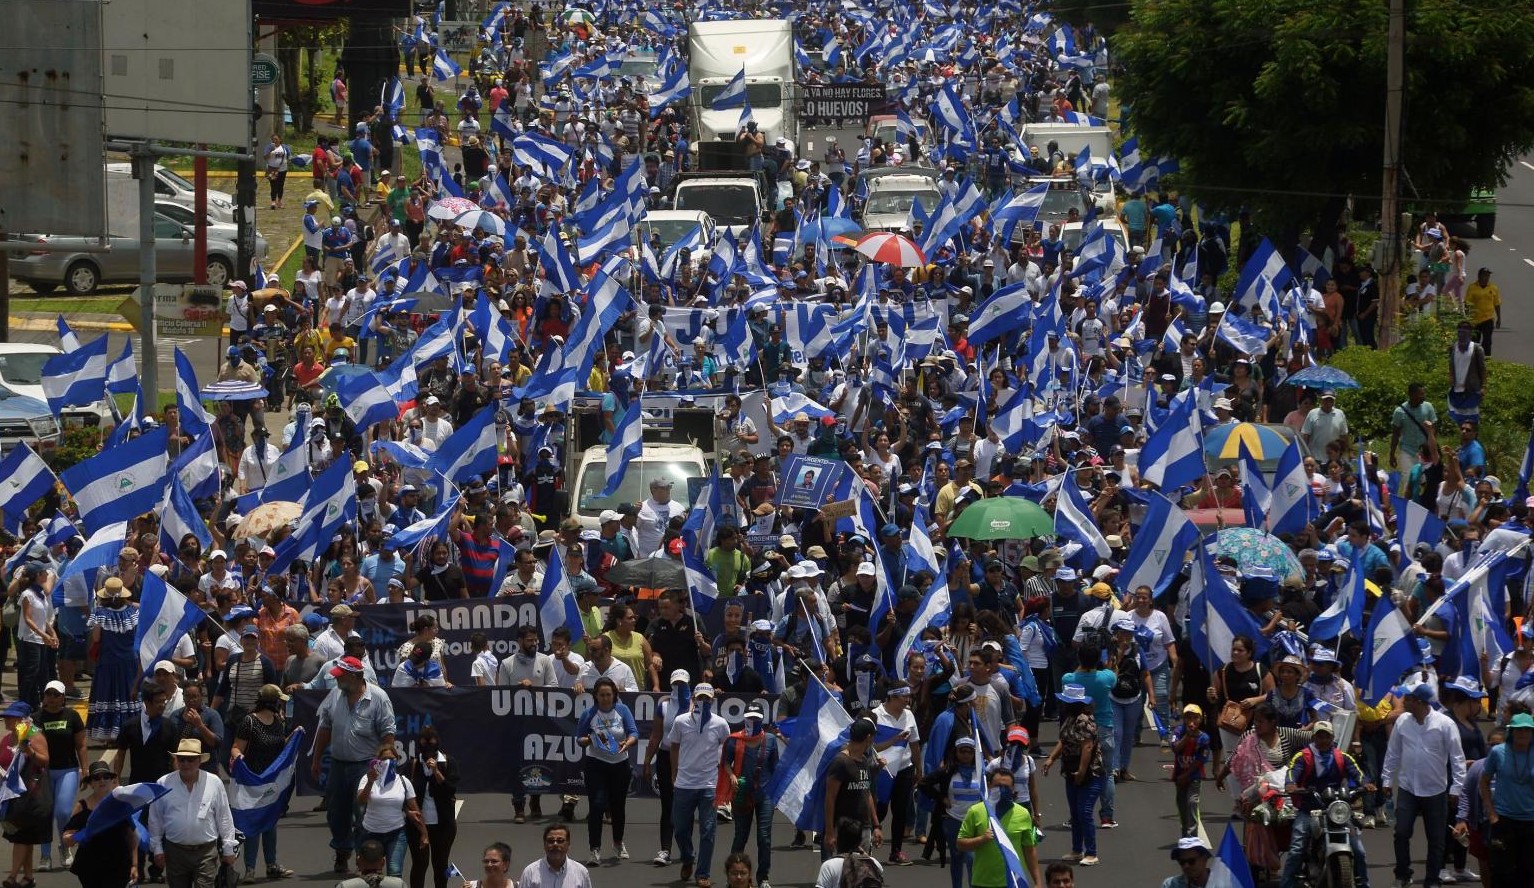 Protestas, enfrentamientos y violencia han sido constantes en Nicaragua desde abril del 2018 con la crisis sociopolítica. (Foto, Prensa Libre: Hemeroteca PL). 